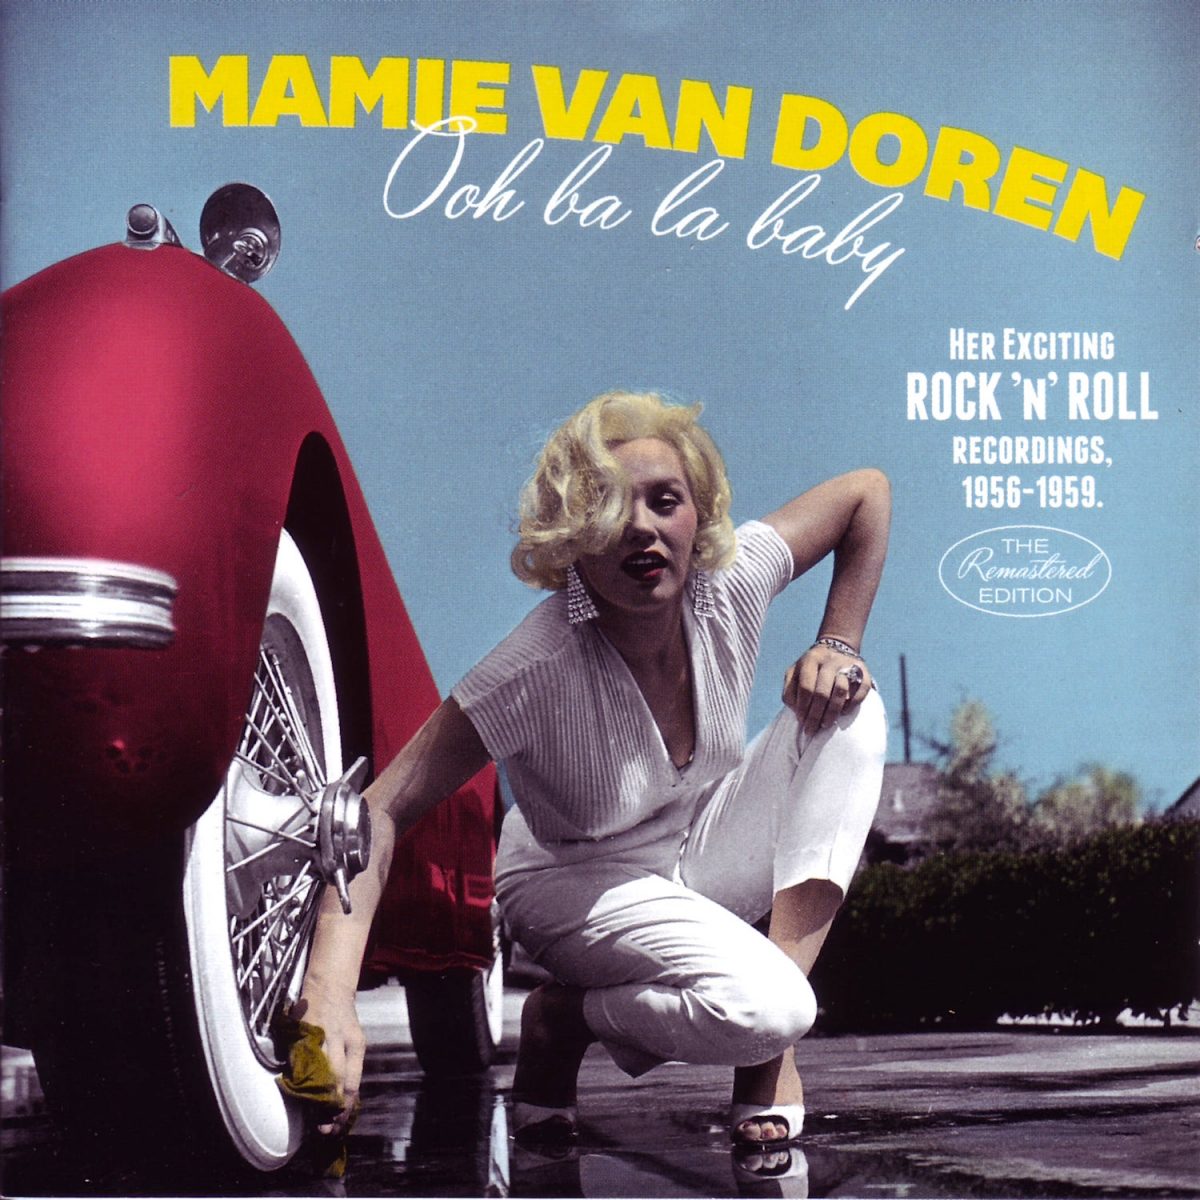 Mamie Van Doren, film star, model